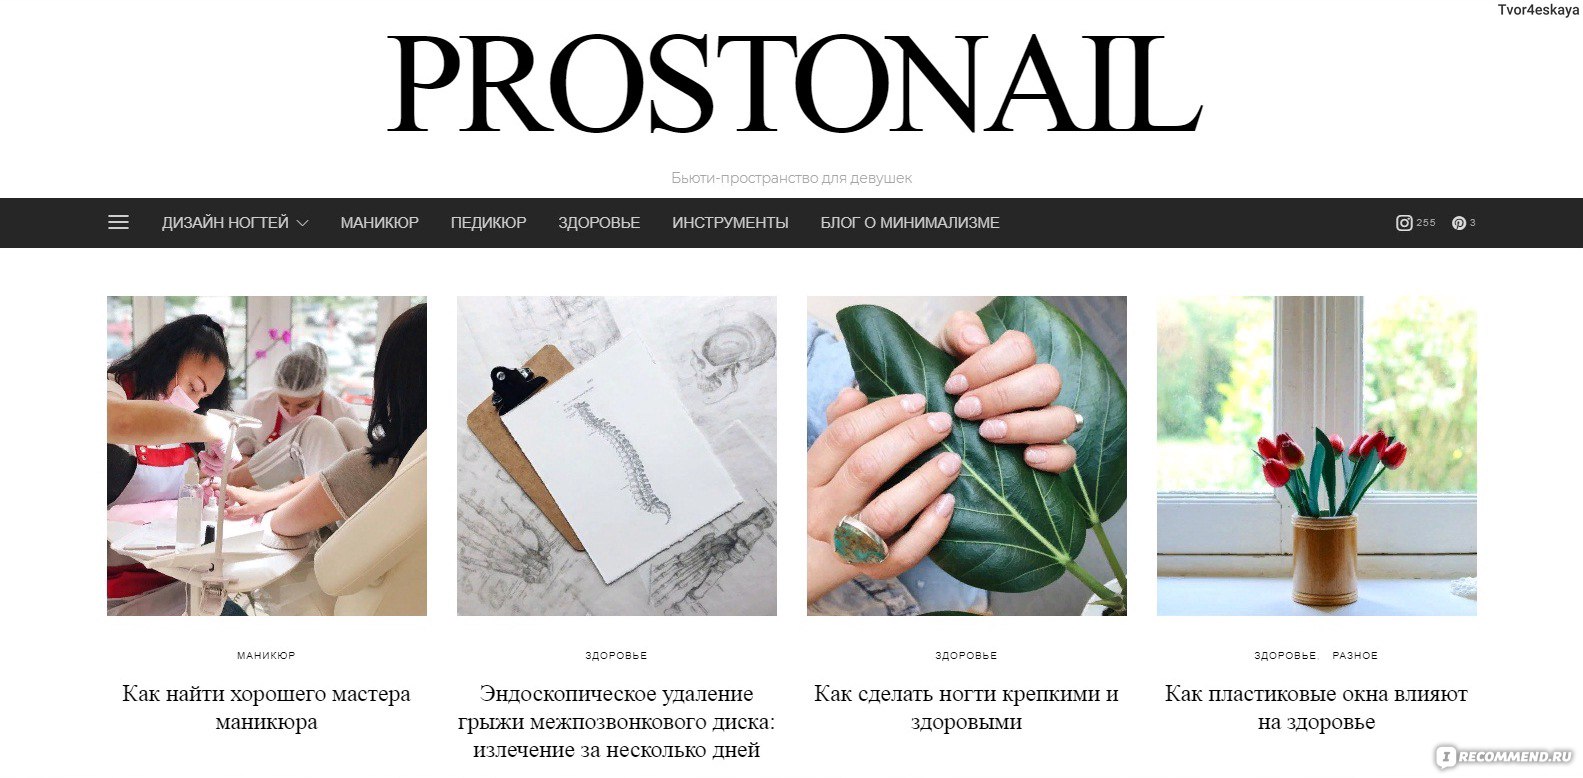 Сайт Prostonail.com - Дизайн ногтей, маникюр, педикюр, здоровье отзывы